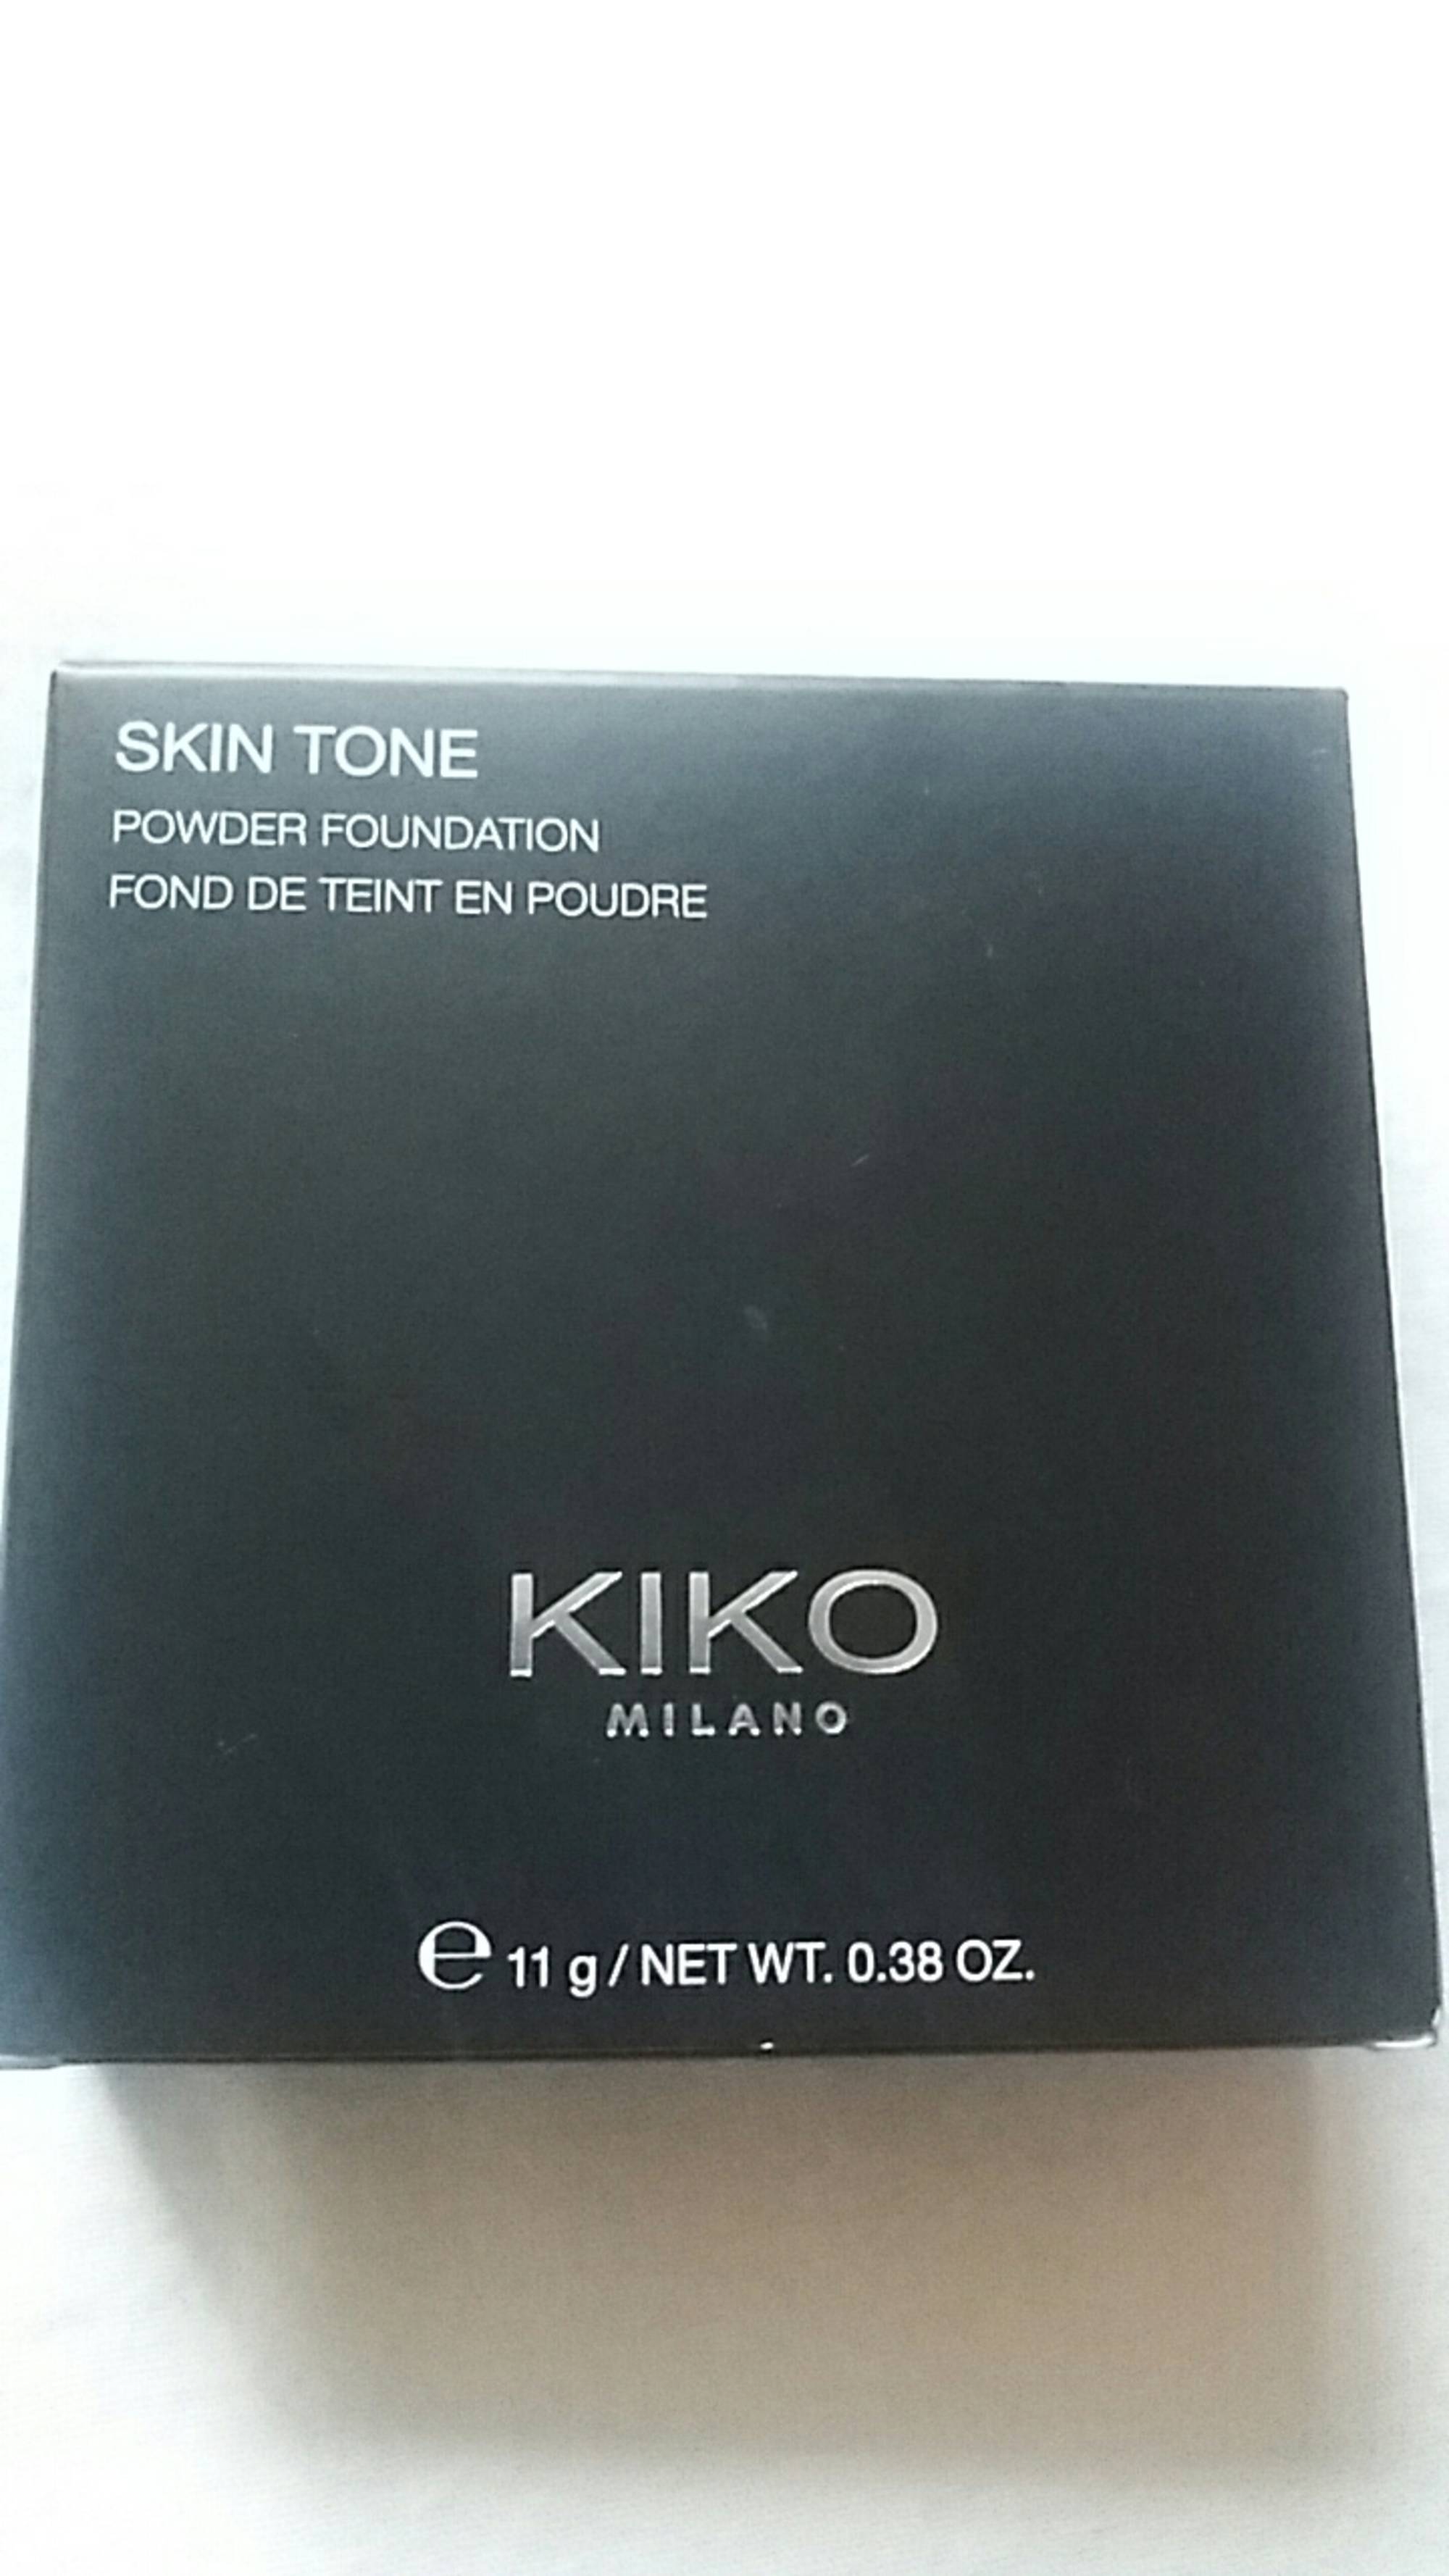 KIKO - Skin tone - Fond de teint en poudre